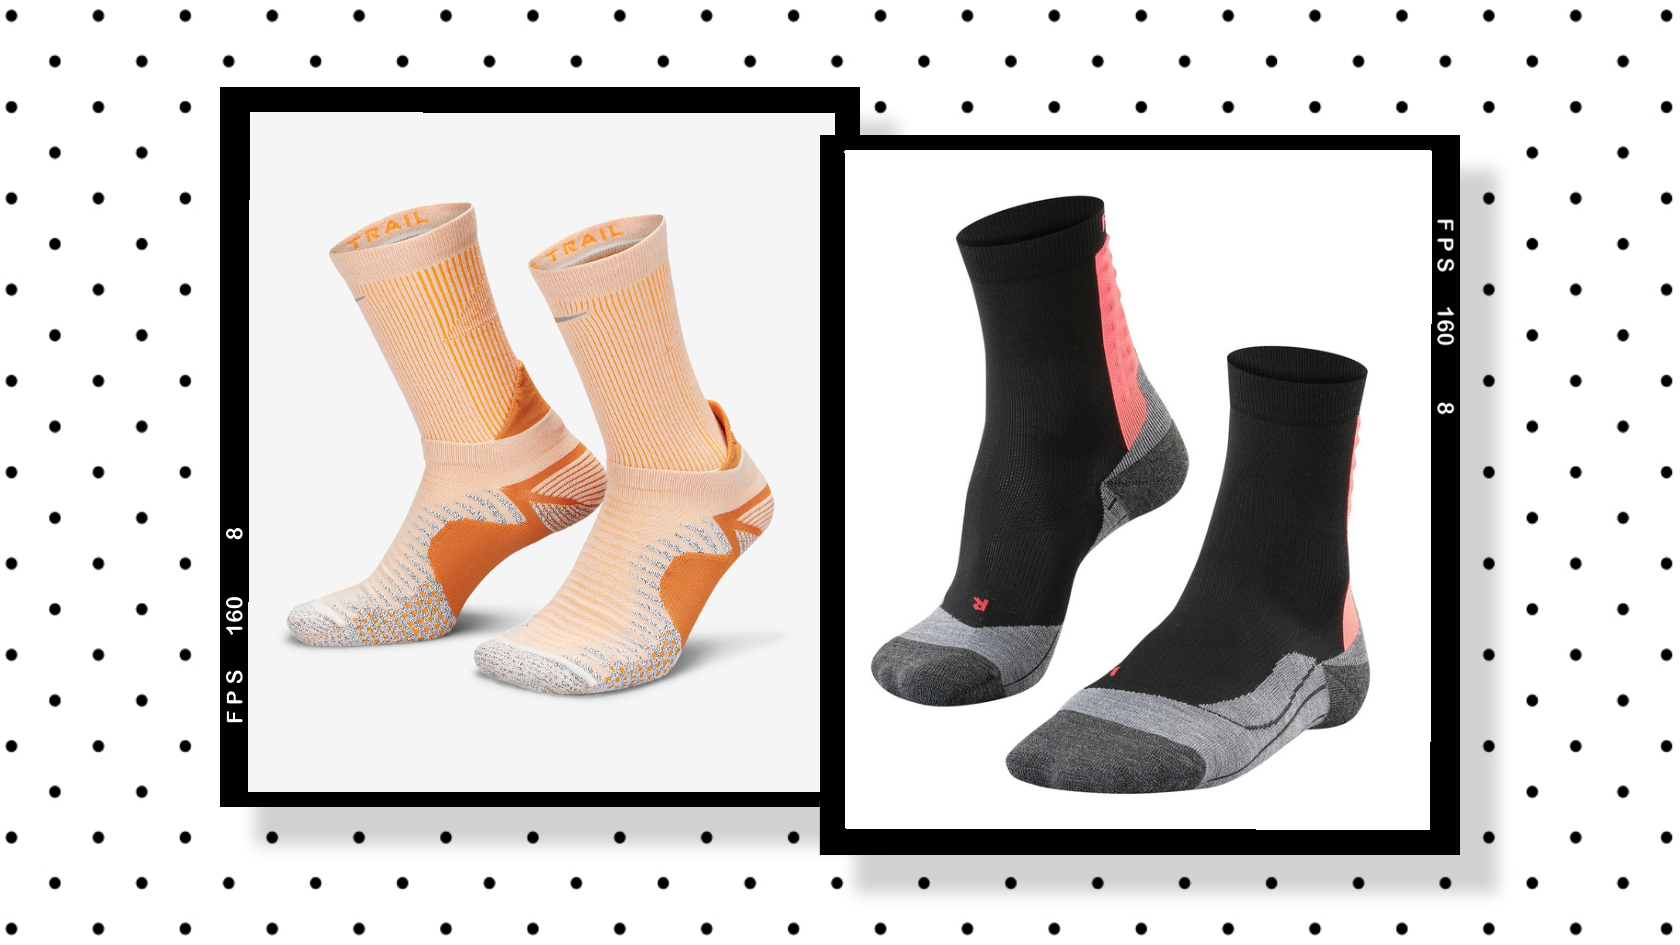 Best running socks: 11 stylish and functional socks for runners